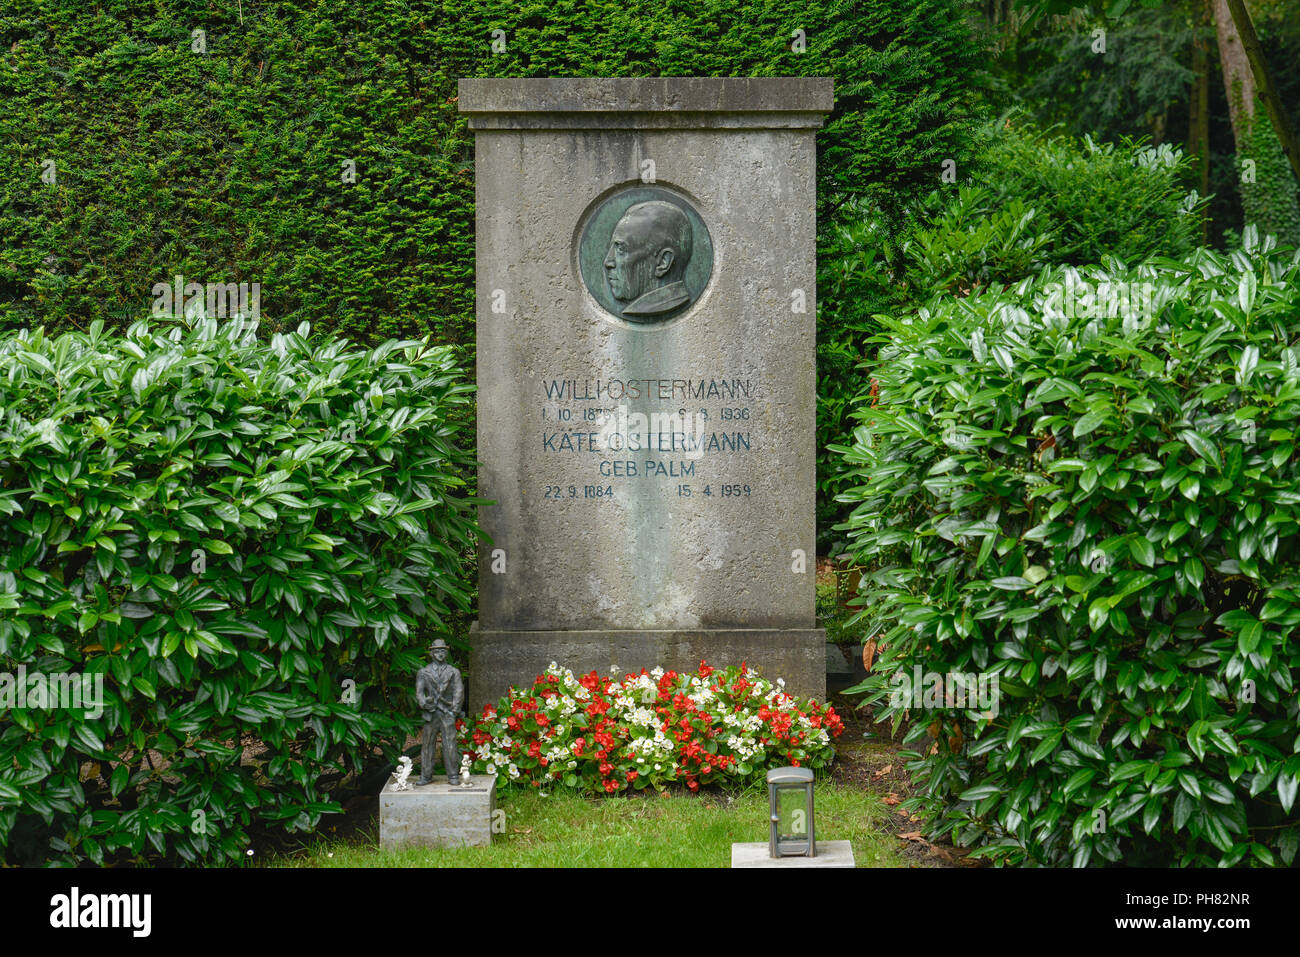 Ehrengrab, Willi Ostermann, Melaten-Friedhof, Aachener Strasse, Lindenthal, Koeln, Nordrhein-Westfalen, Deutschland Stock Photo